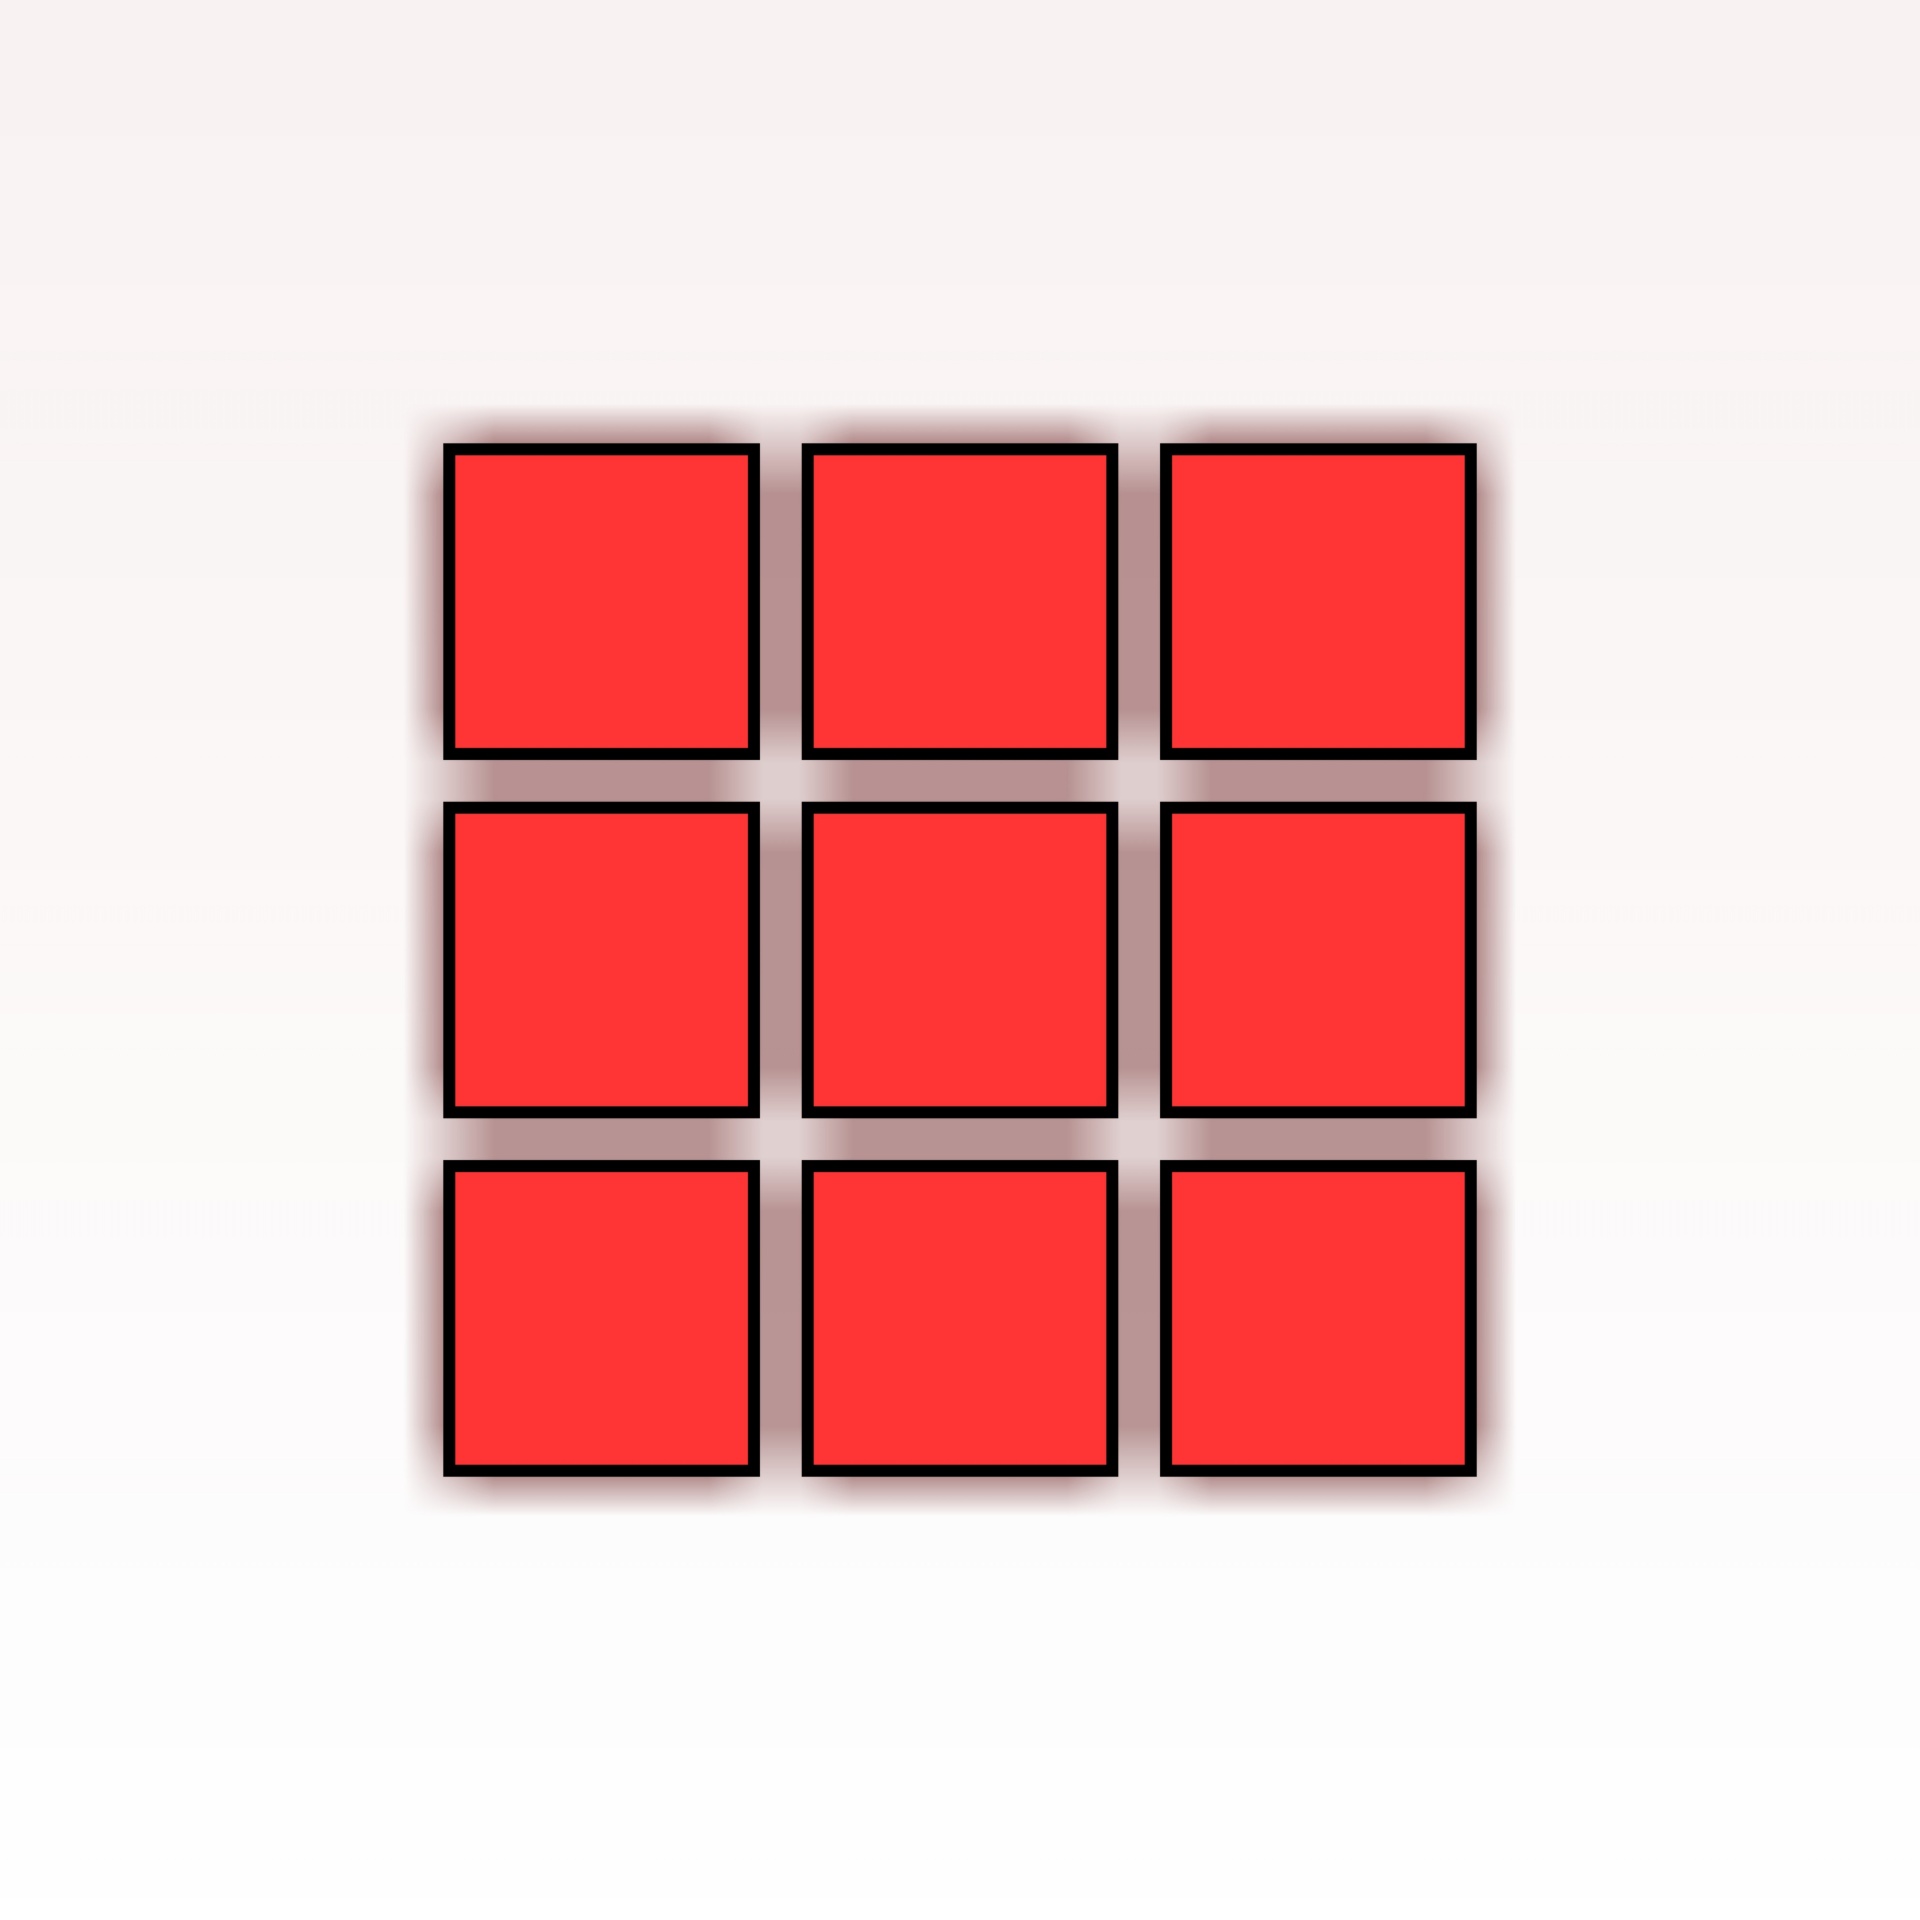 Игра красное черное квадрат. Красный квадрат. Красный квадратик. Квадраты раздаточный материал. Красный квадрат на белом фоне.